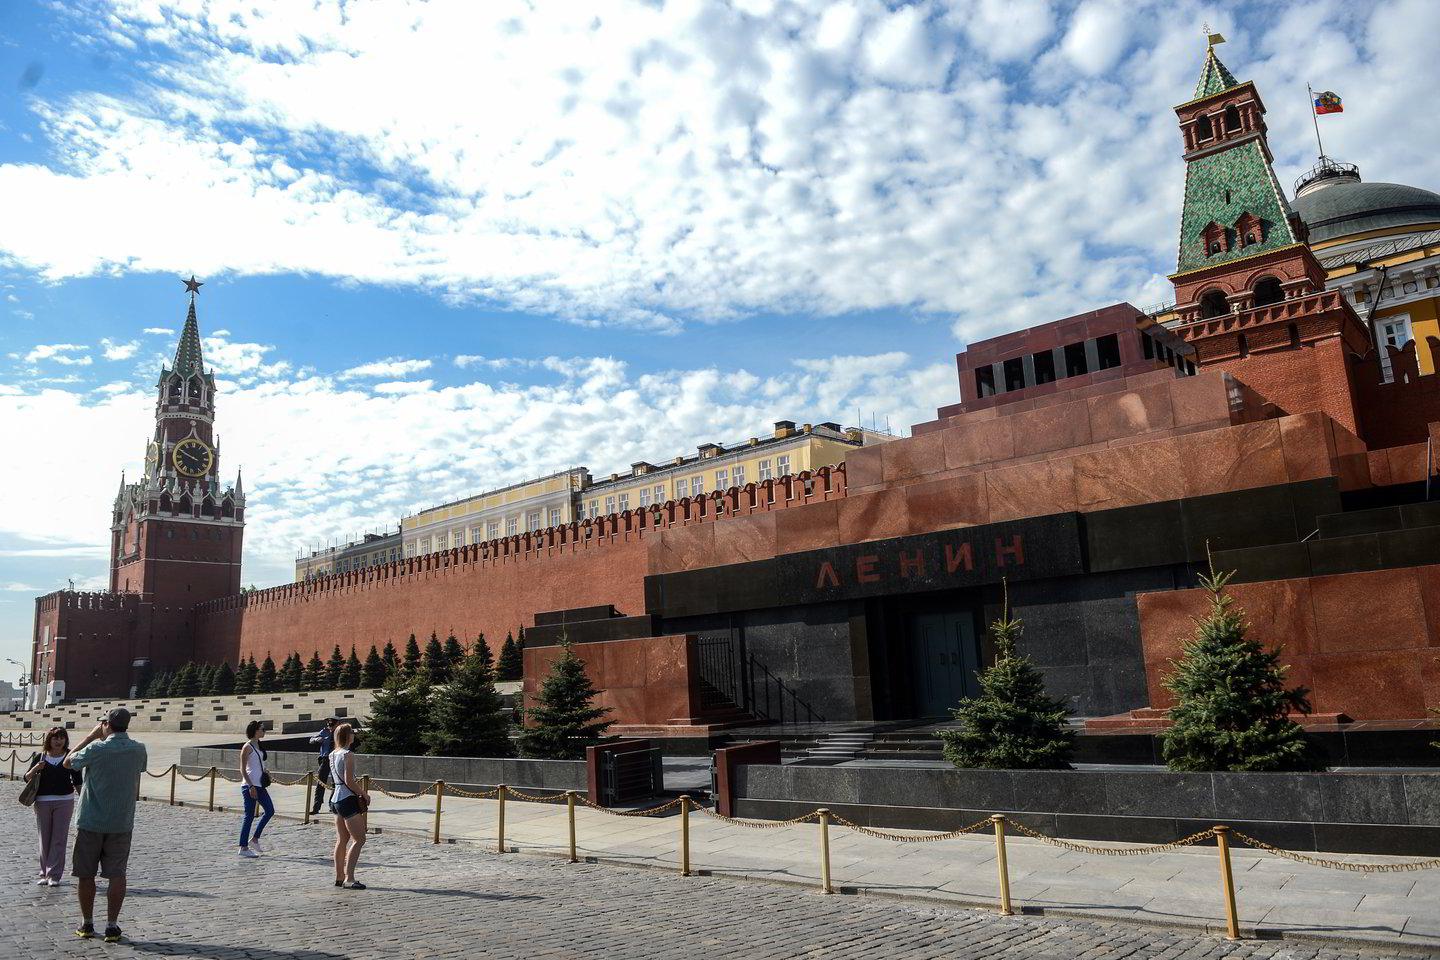  V.Lenino kūnas iki šiol nepalaidotas - jis guli šiame mauzoliejuje Maskvos centre.<br> Scanpix nuotr.